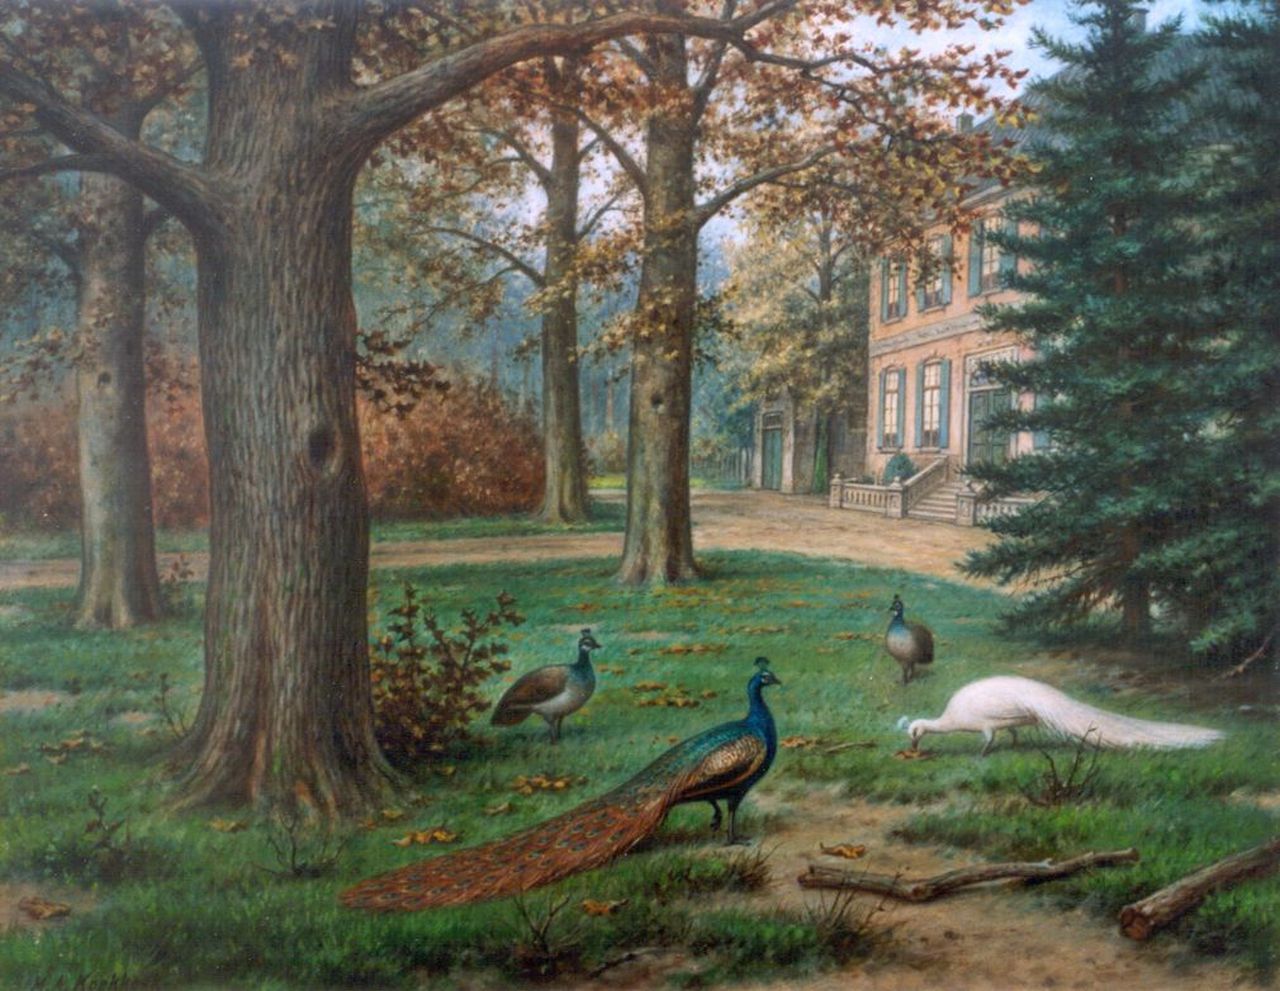 Koekkoek II M.A.  | Marinus Adrianus Koekkoek II, Peacocks in a landscape garden, oil on canvas 40.2 x 50.5 cm, signed l.l.